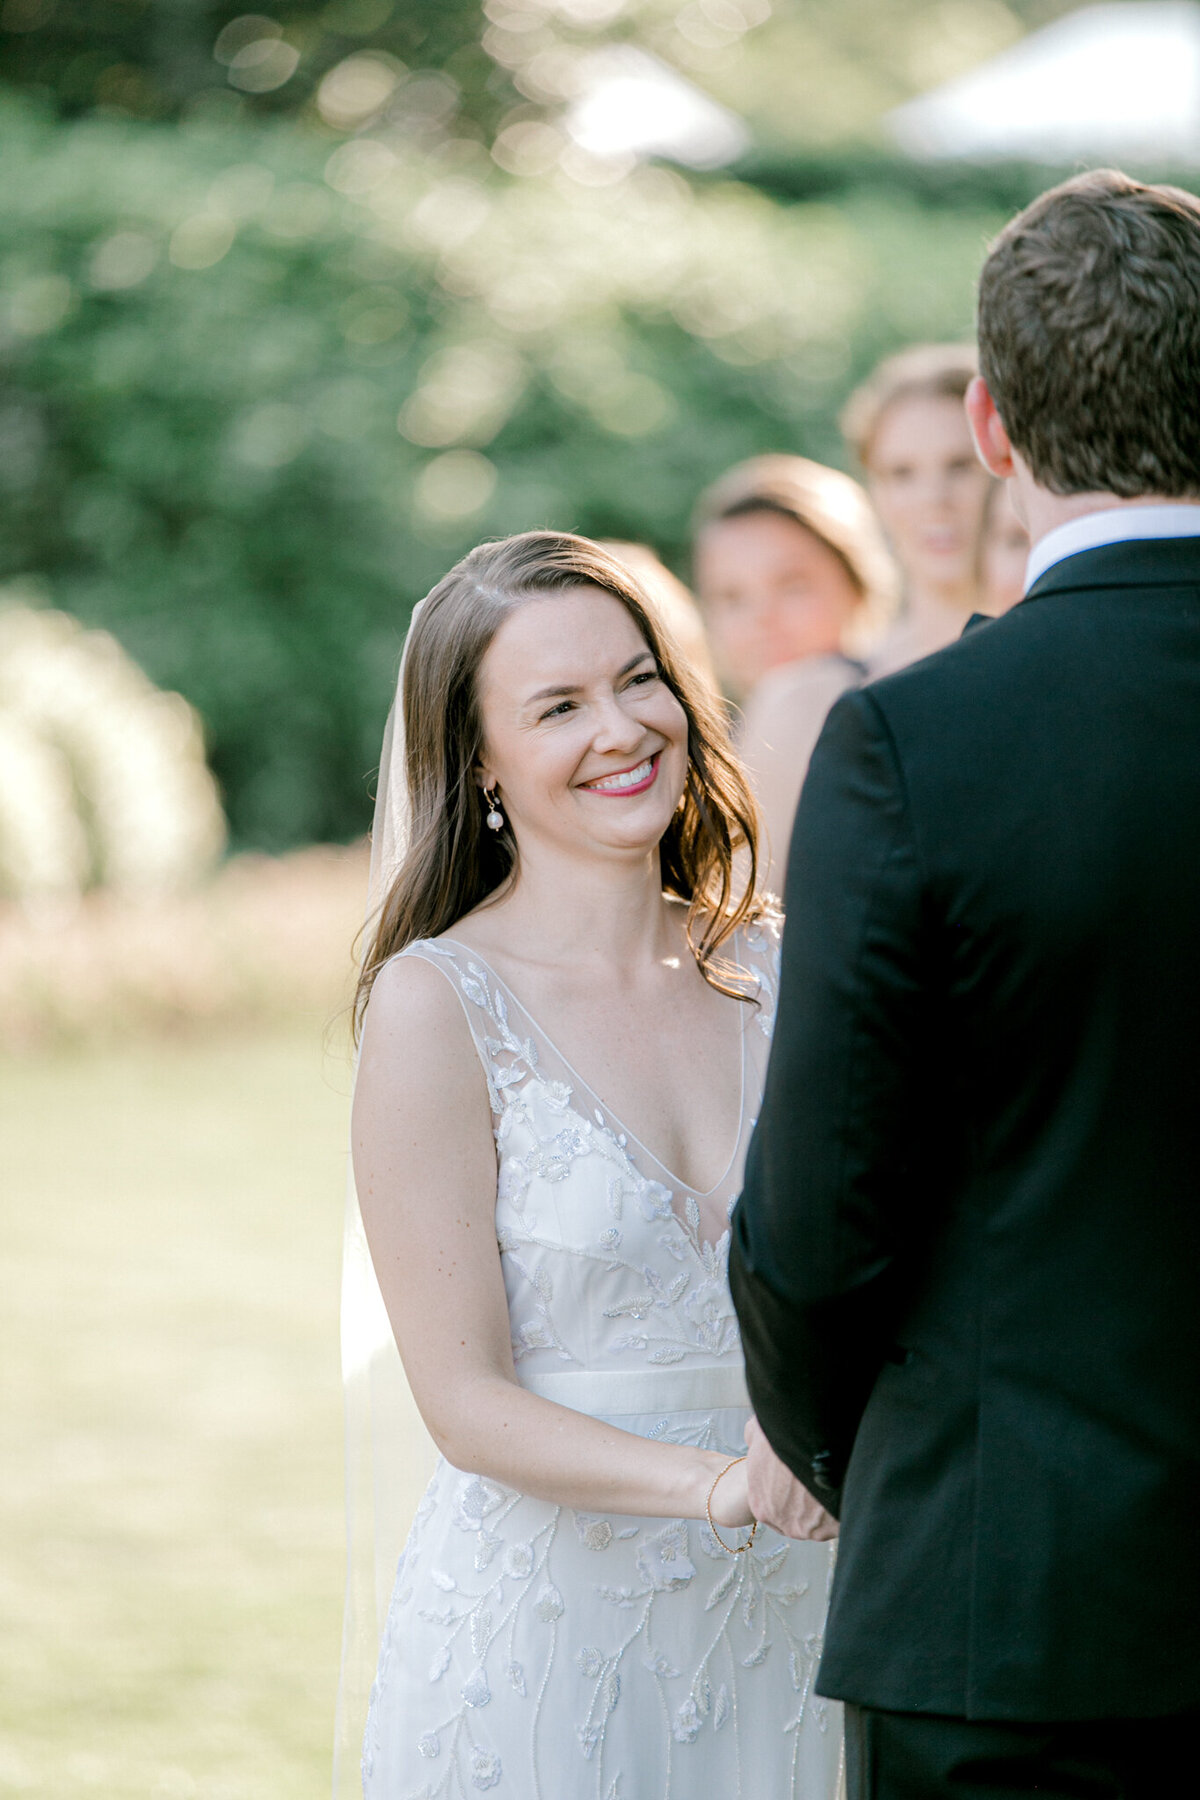 Gena & Matt's Wedding at the Dallas Arboretum | Dallas Wedding Photographer | Sami Kathryn Photography-142